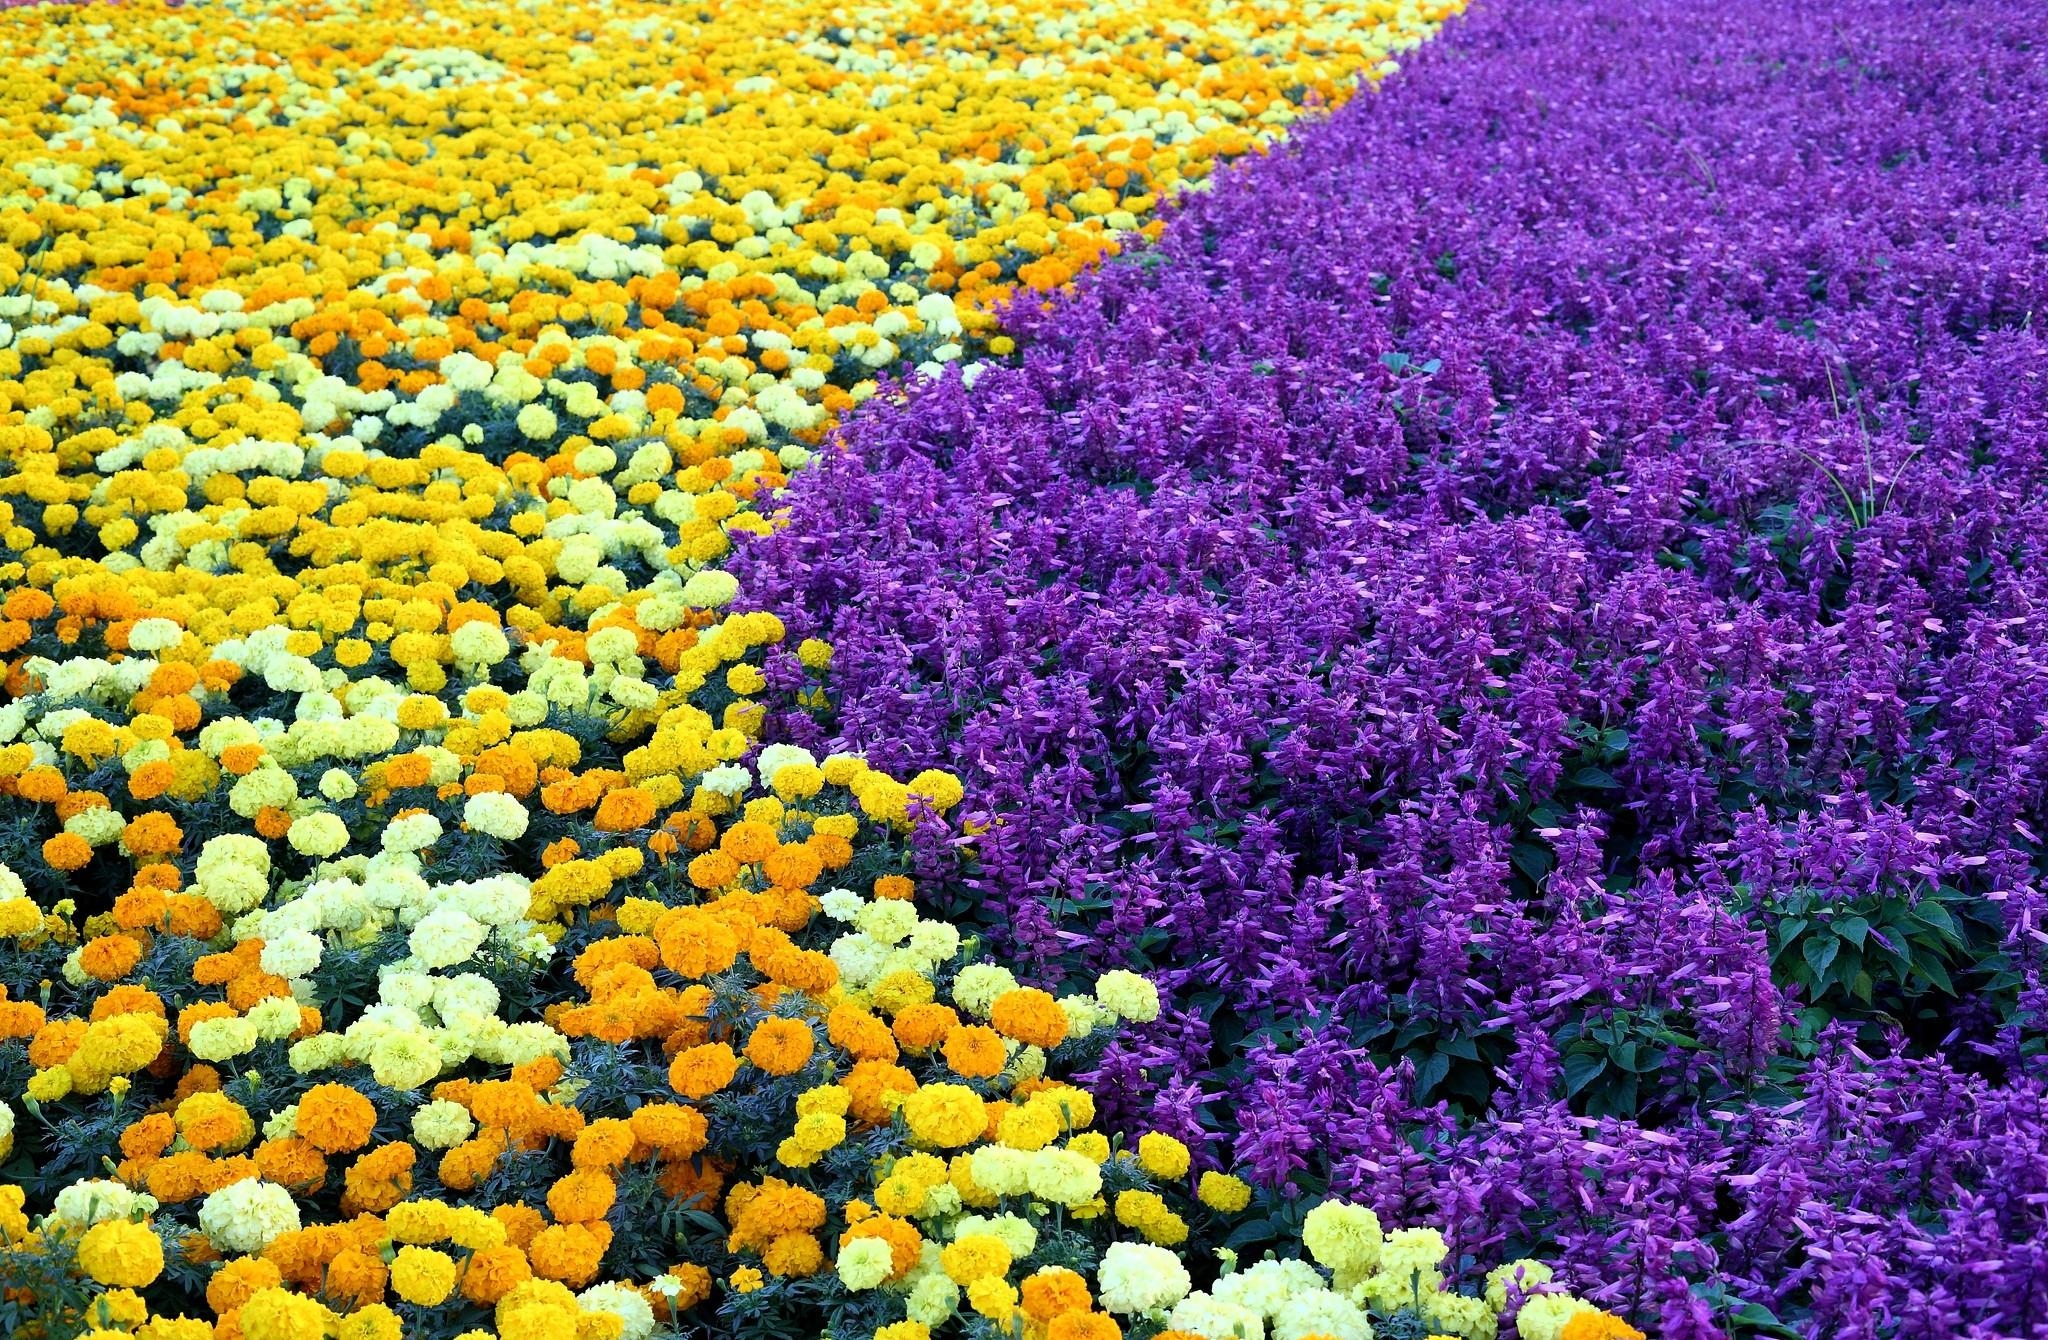 Best Flower Bed Desktop Images